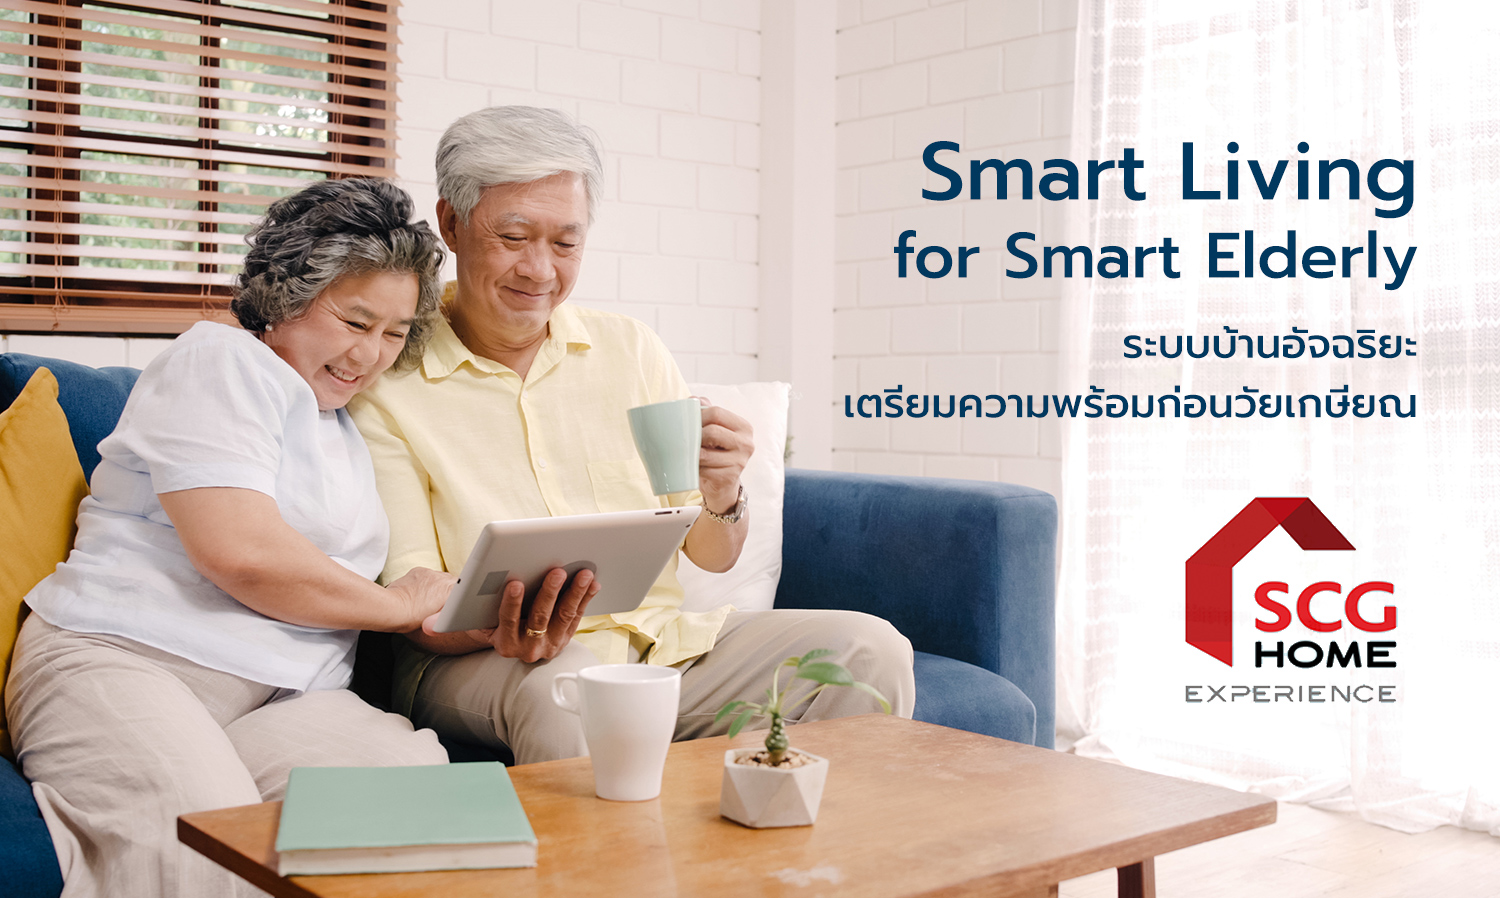 Smart Living for Smart Elderly ระบบบ้านอัจฉริยะ เตรียมความพร้อมก่อนวัยเกษียณ